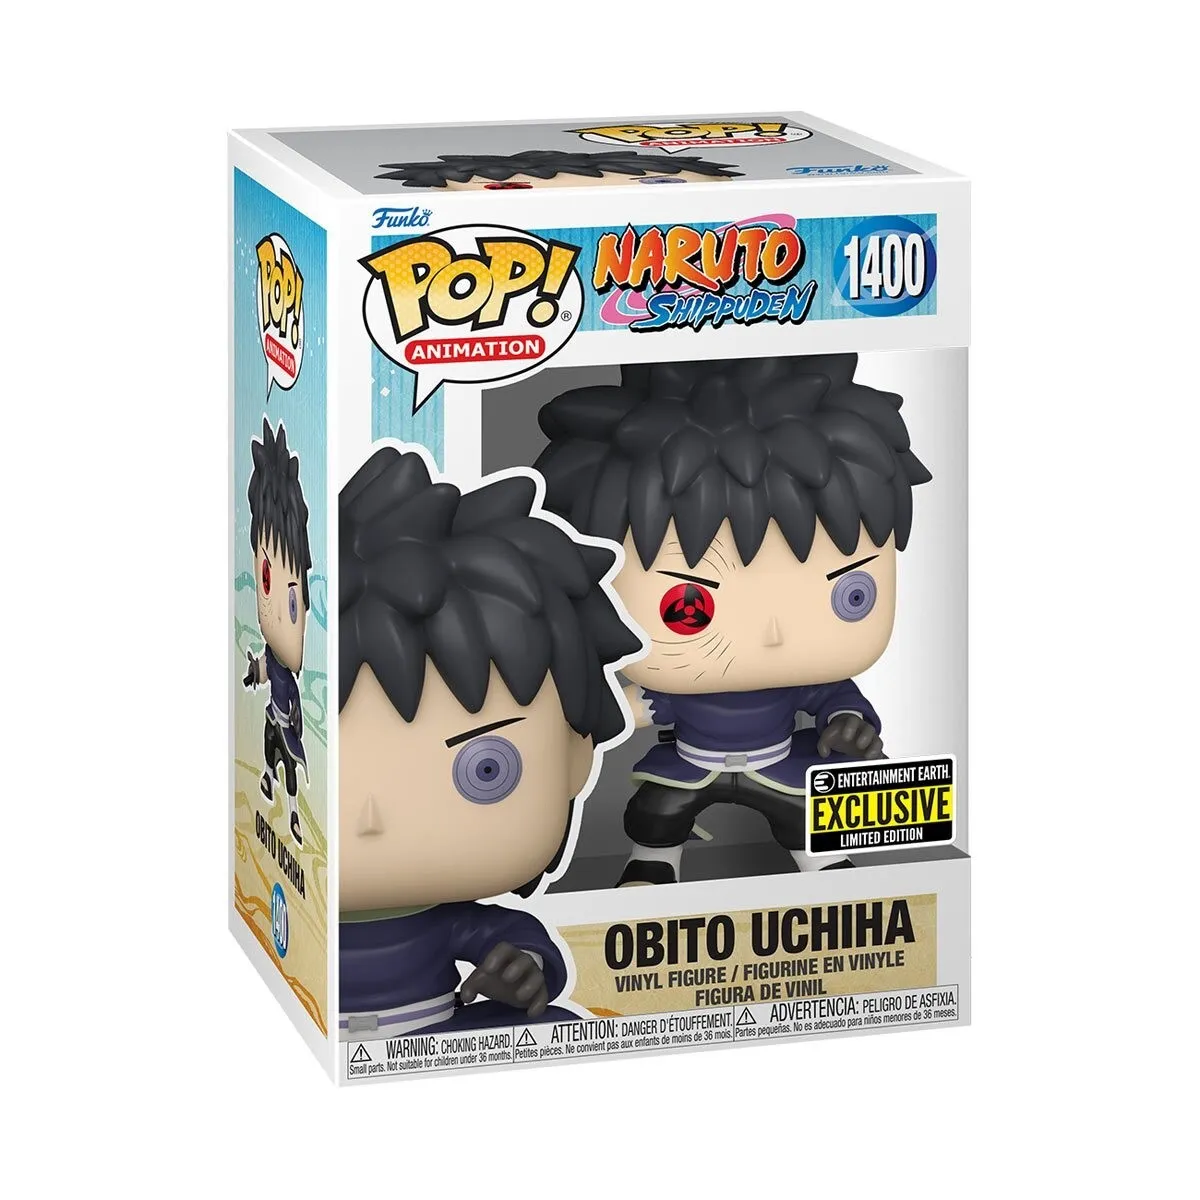 Figura Obito Funko Pop! Naruto Shippuden Anime 1400